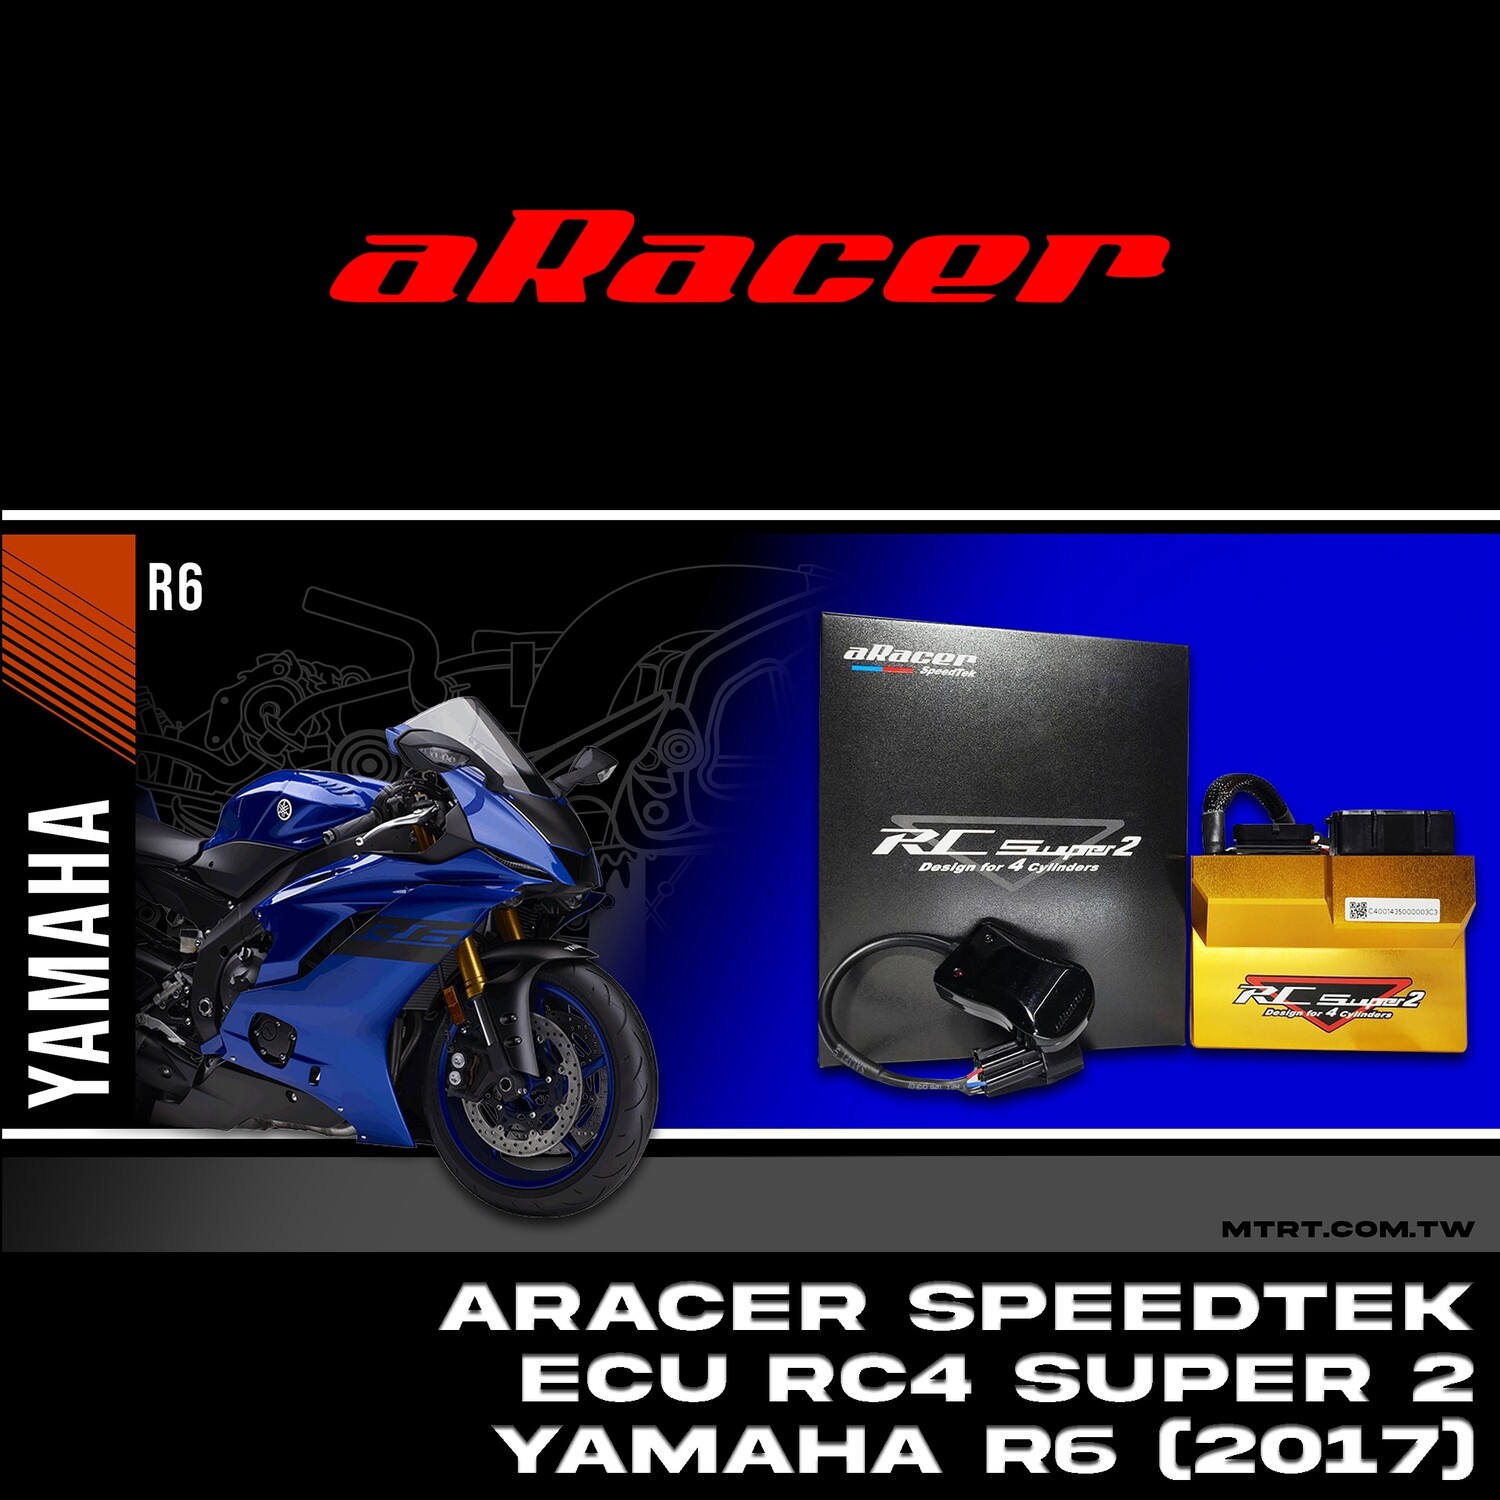 ARACER speedtek ECU RC4 SUPER2 YAMAHA R6 (2017)